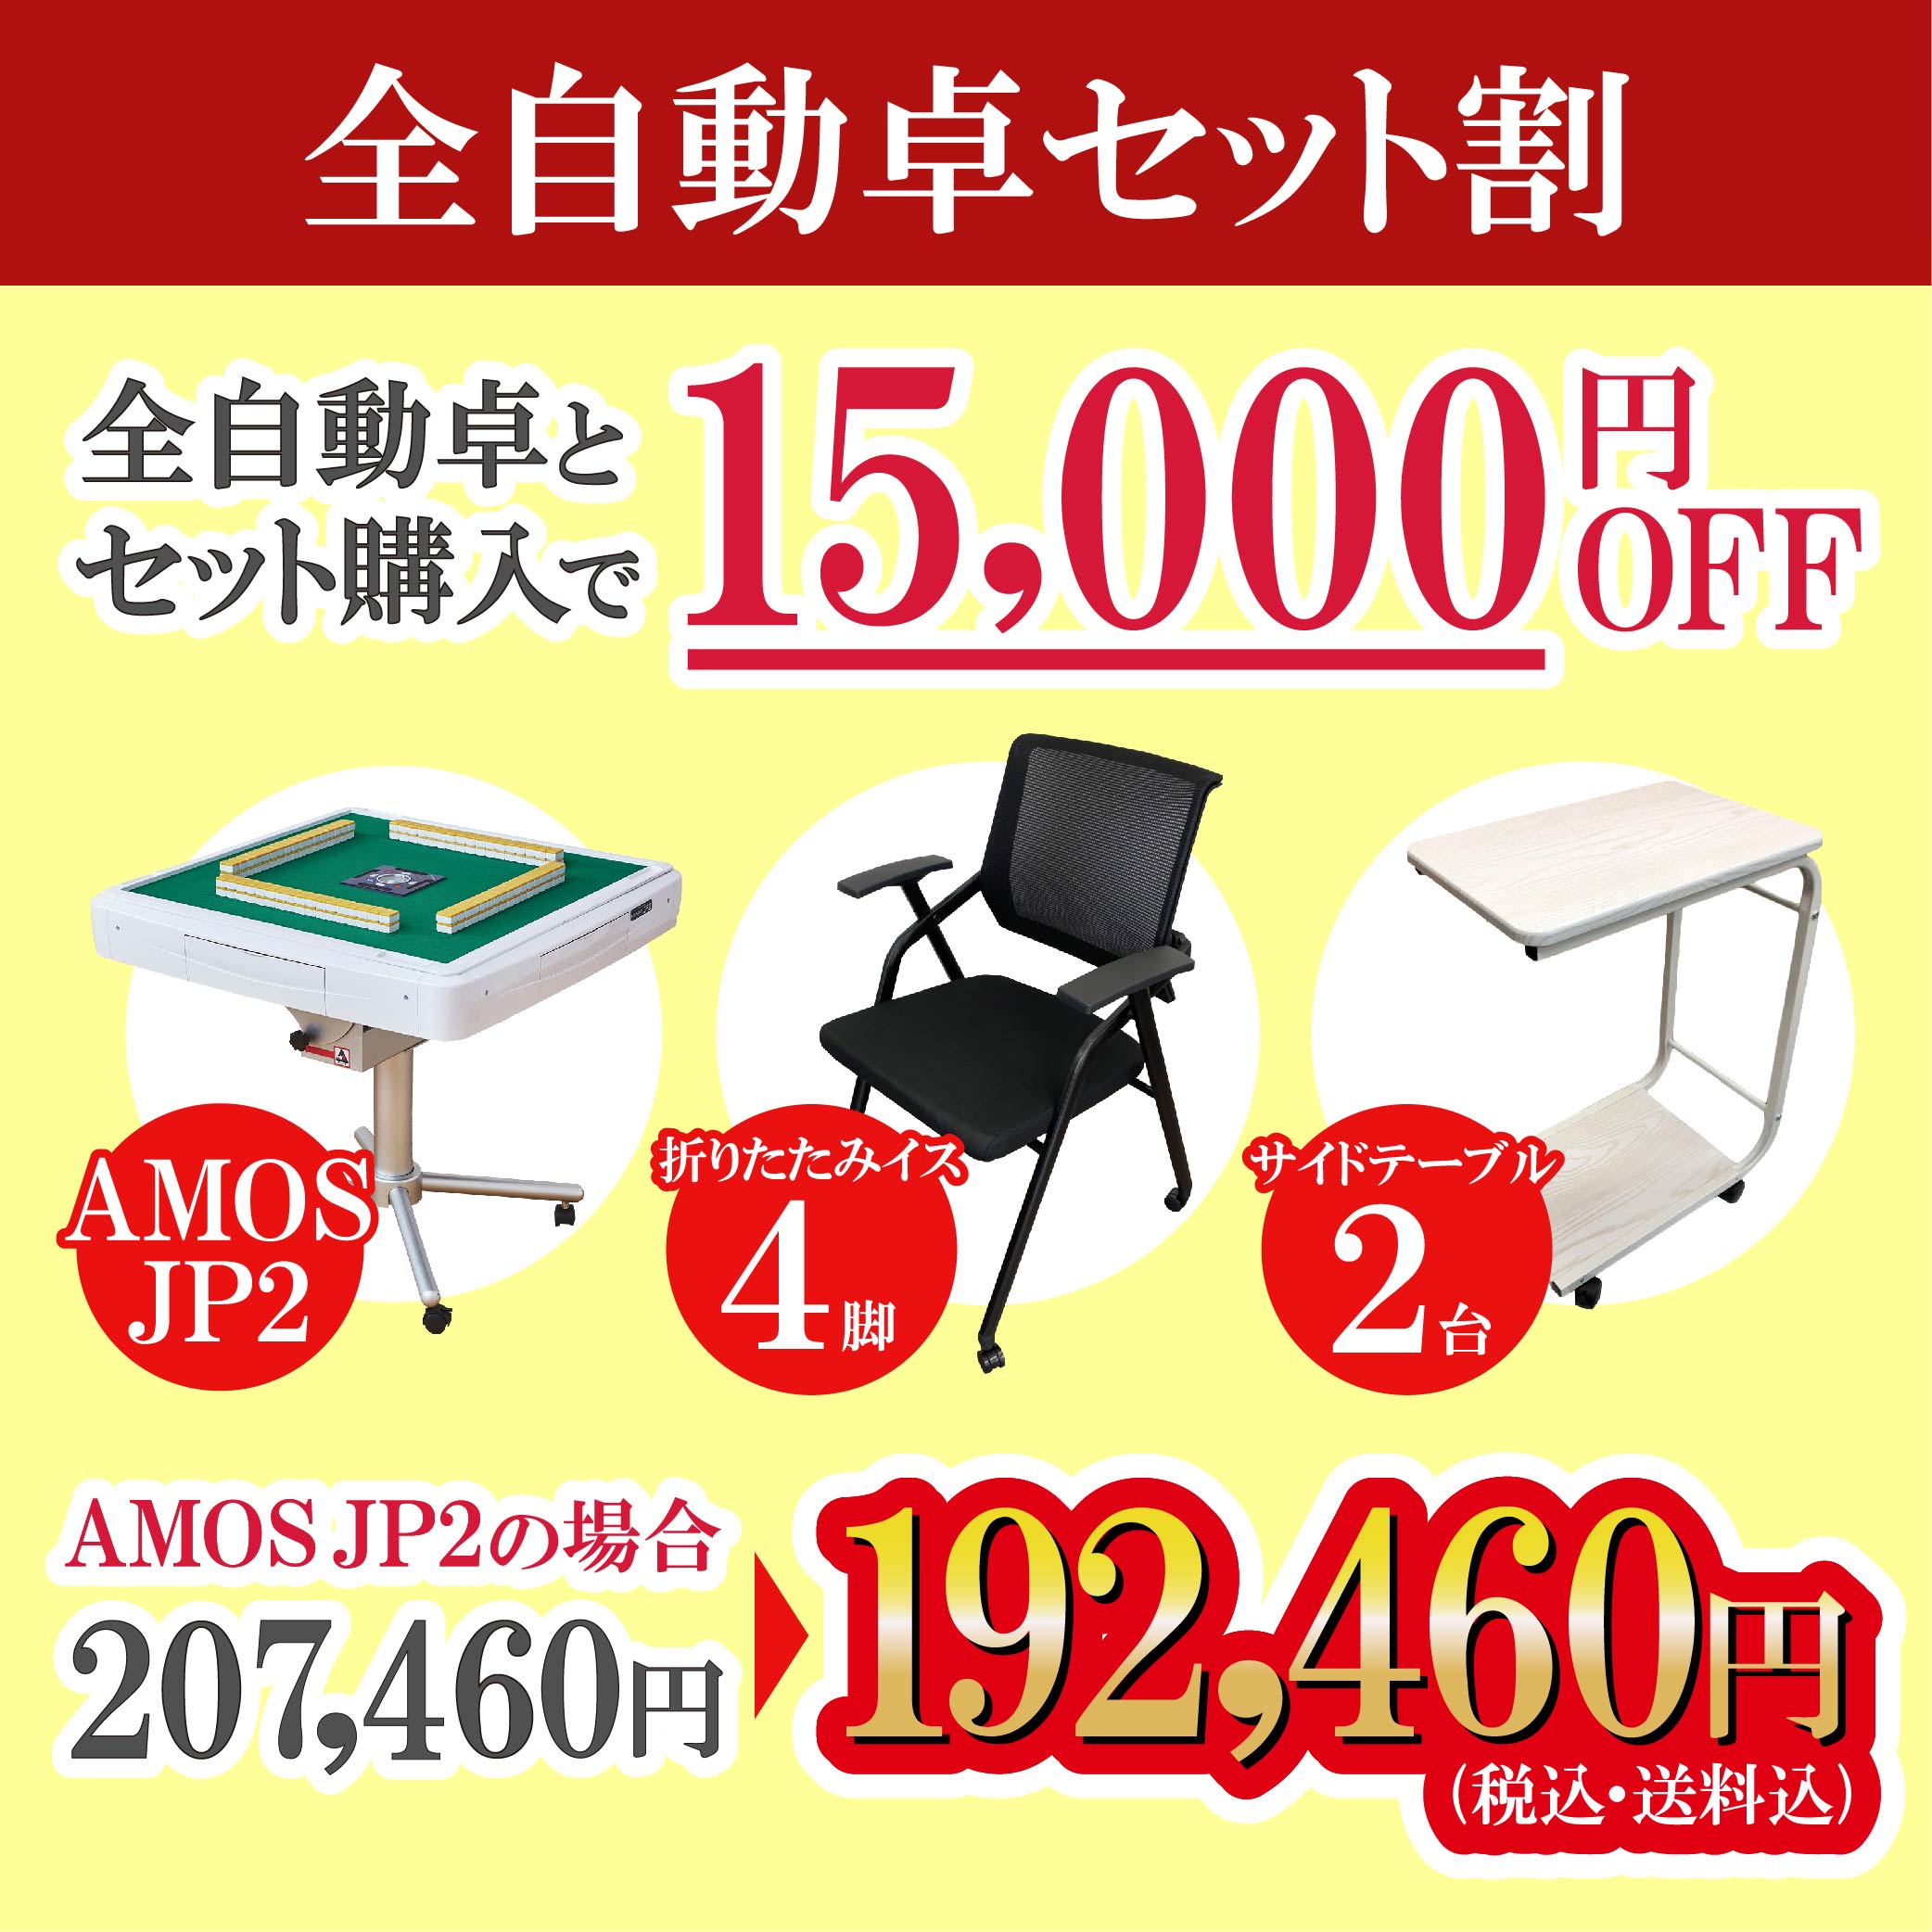 2年前に購入使用頻度月2回程度Amos jp2